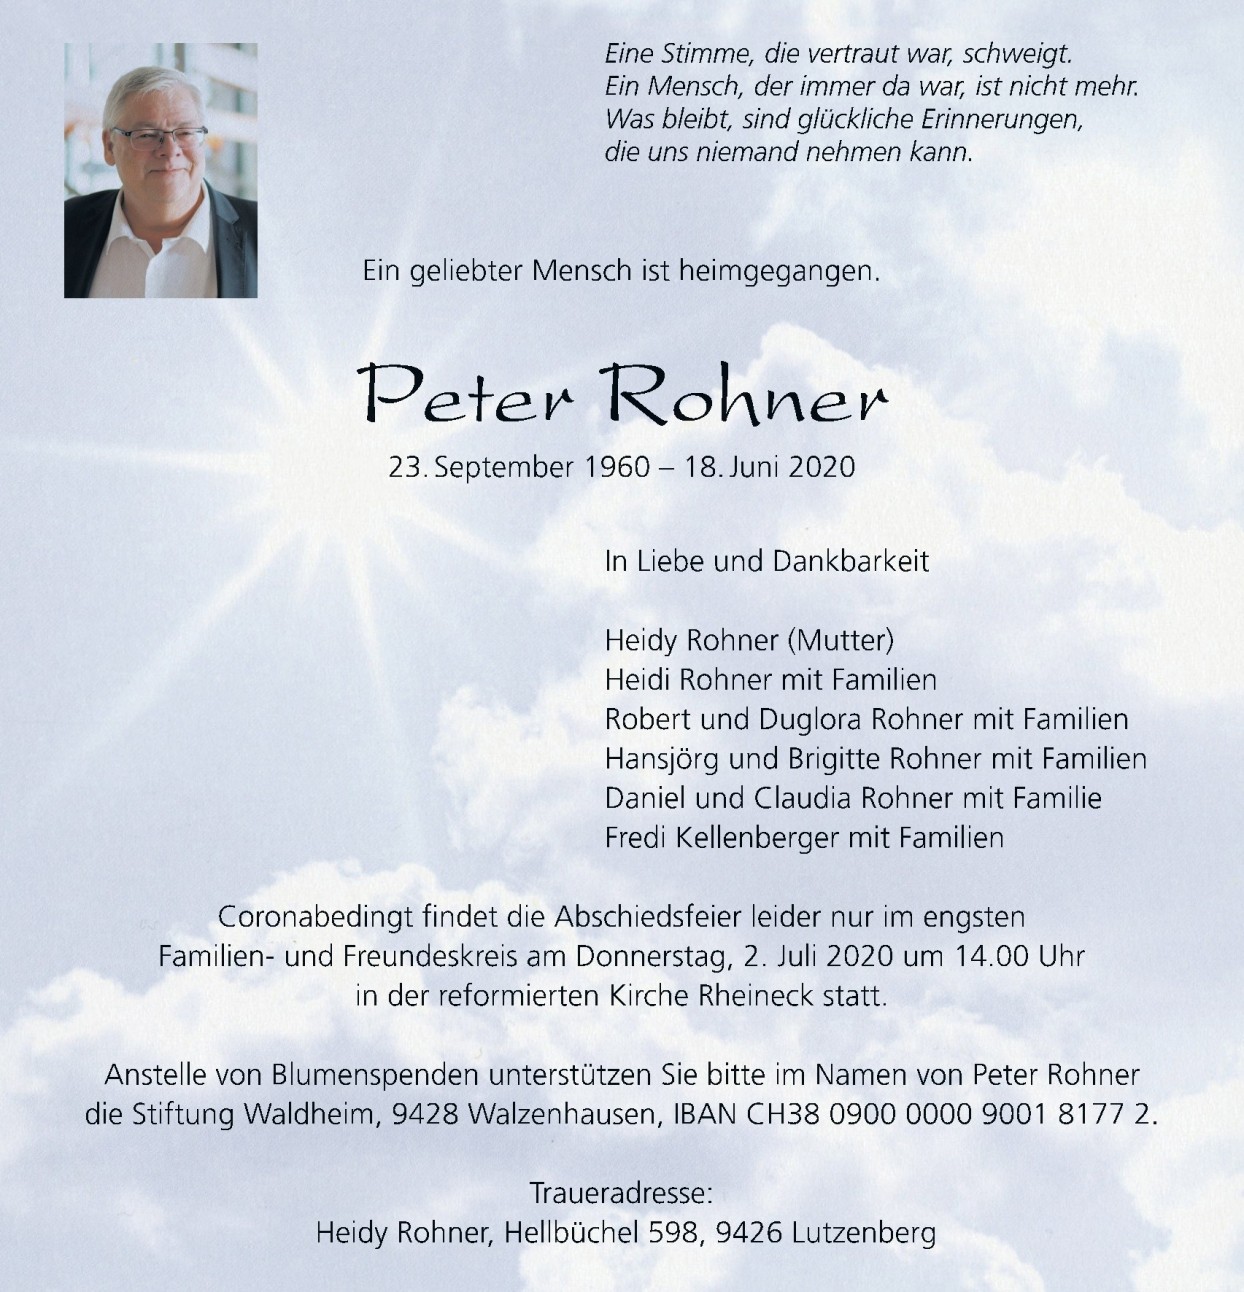 Peter Rohner